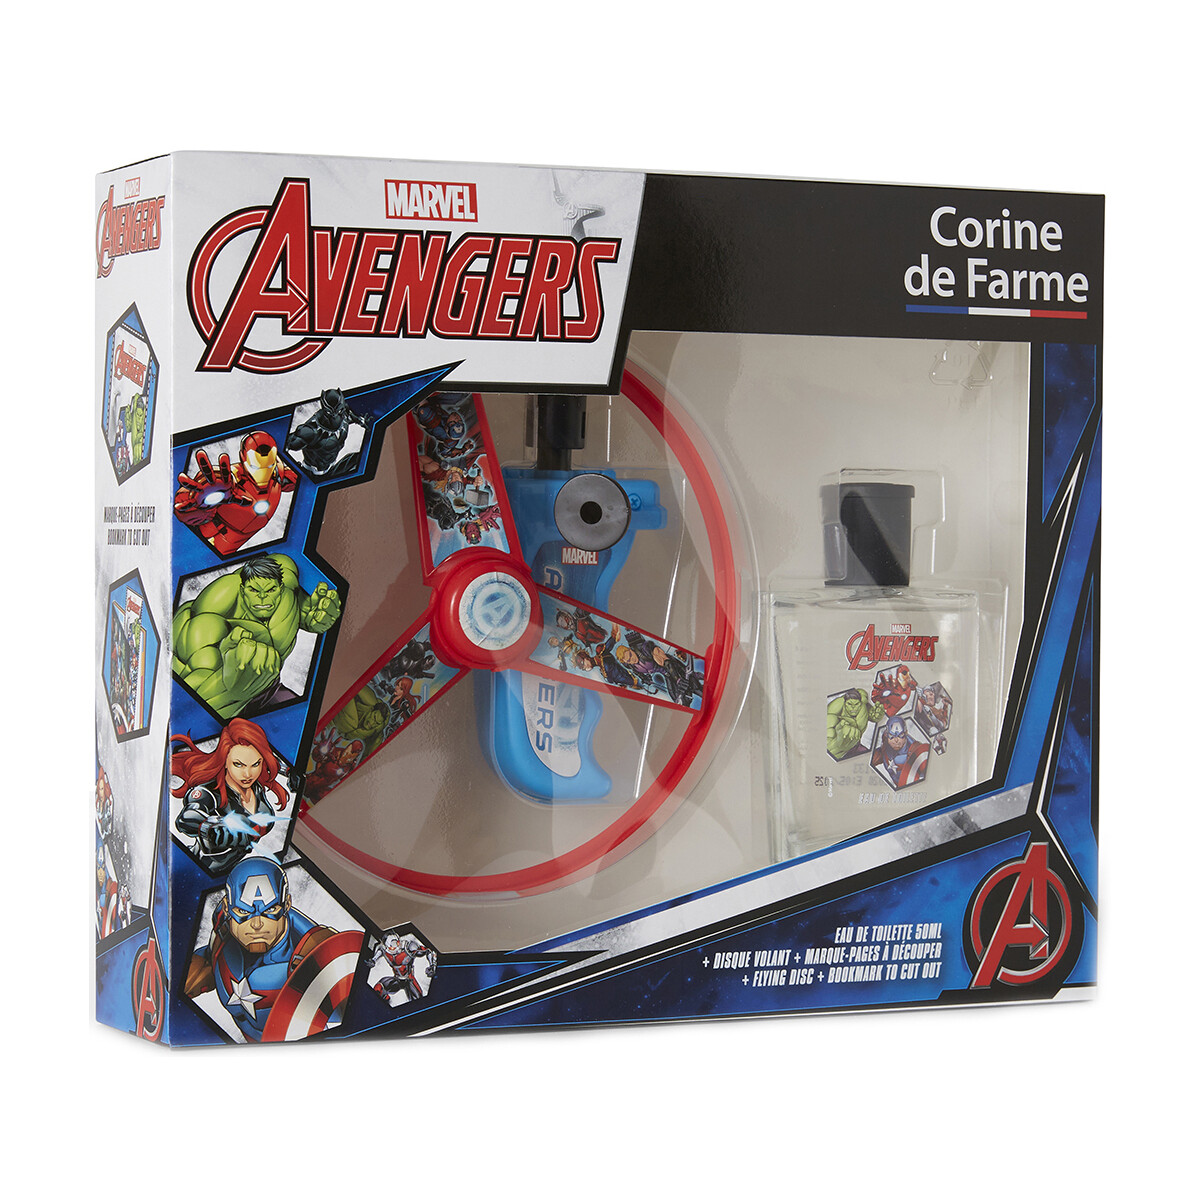 Corine De Farme Autres Coffret cadeau Avengers Marvel m